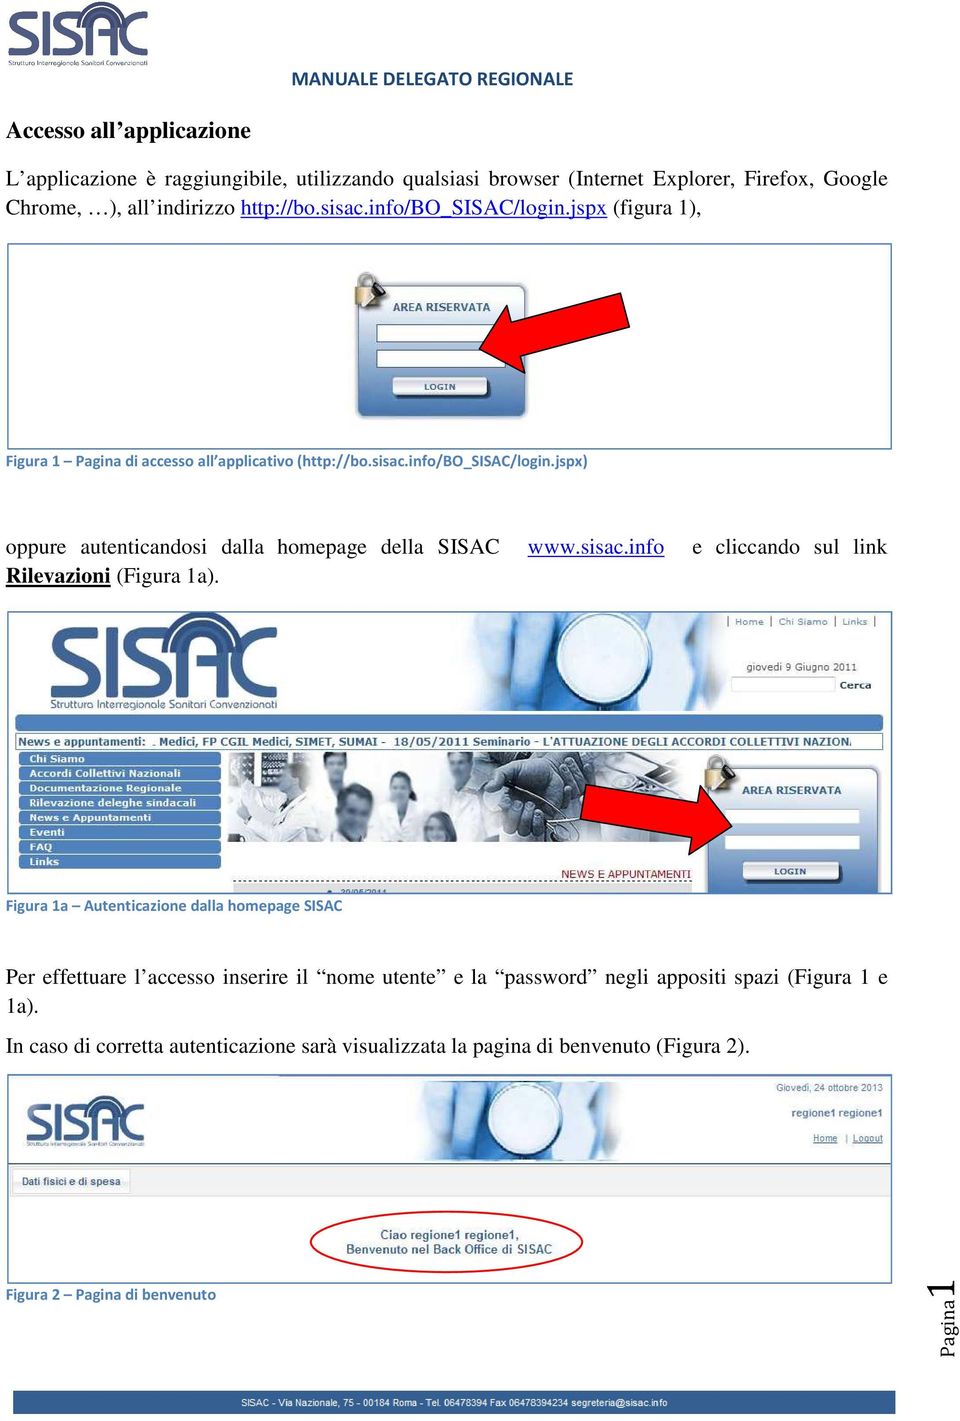 sisac.info e cliccando sul link Rilevazioni (Figura 1a).